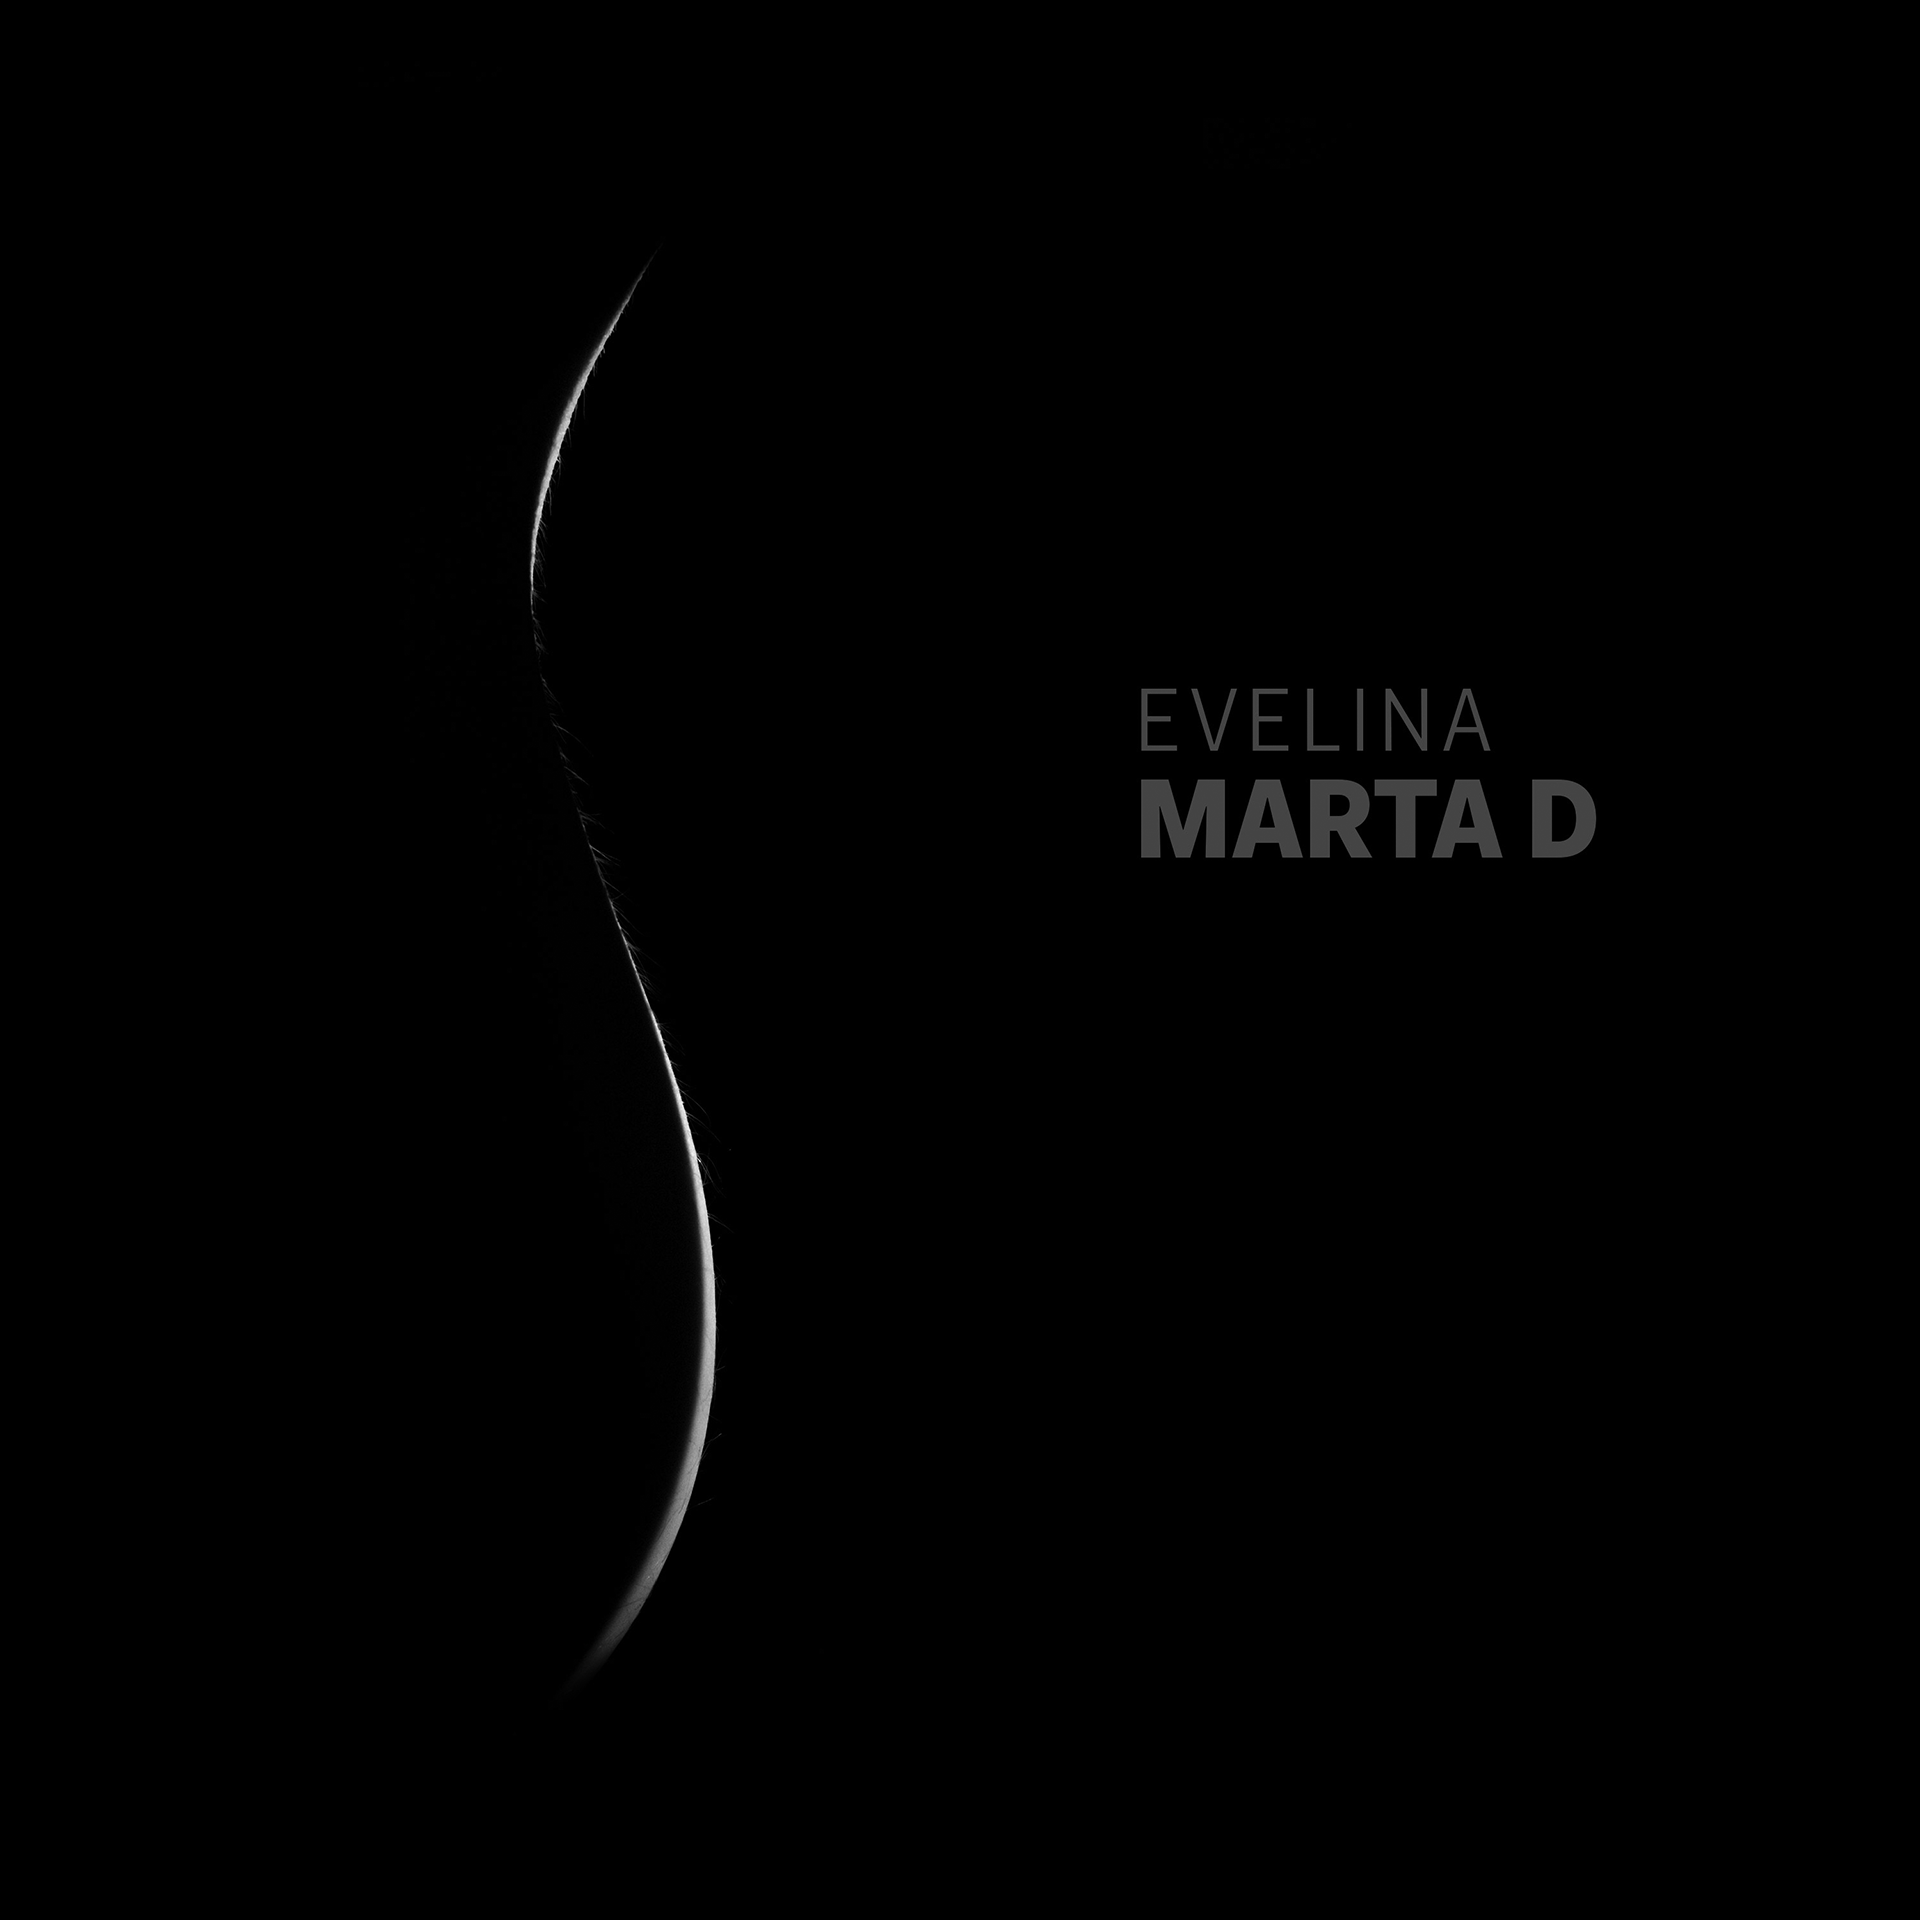 MARTA D è il singolo d'esordio di EVELINA, progetto artistico anonimo e queer - Disponibile da venerdì 12 aprile
